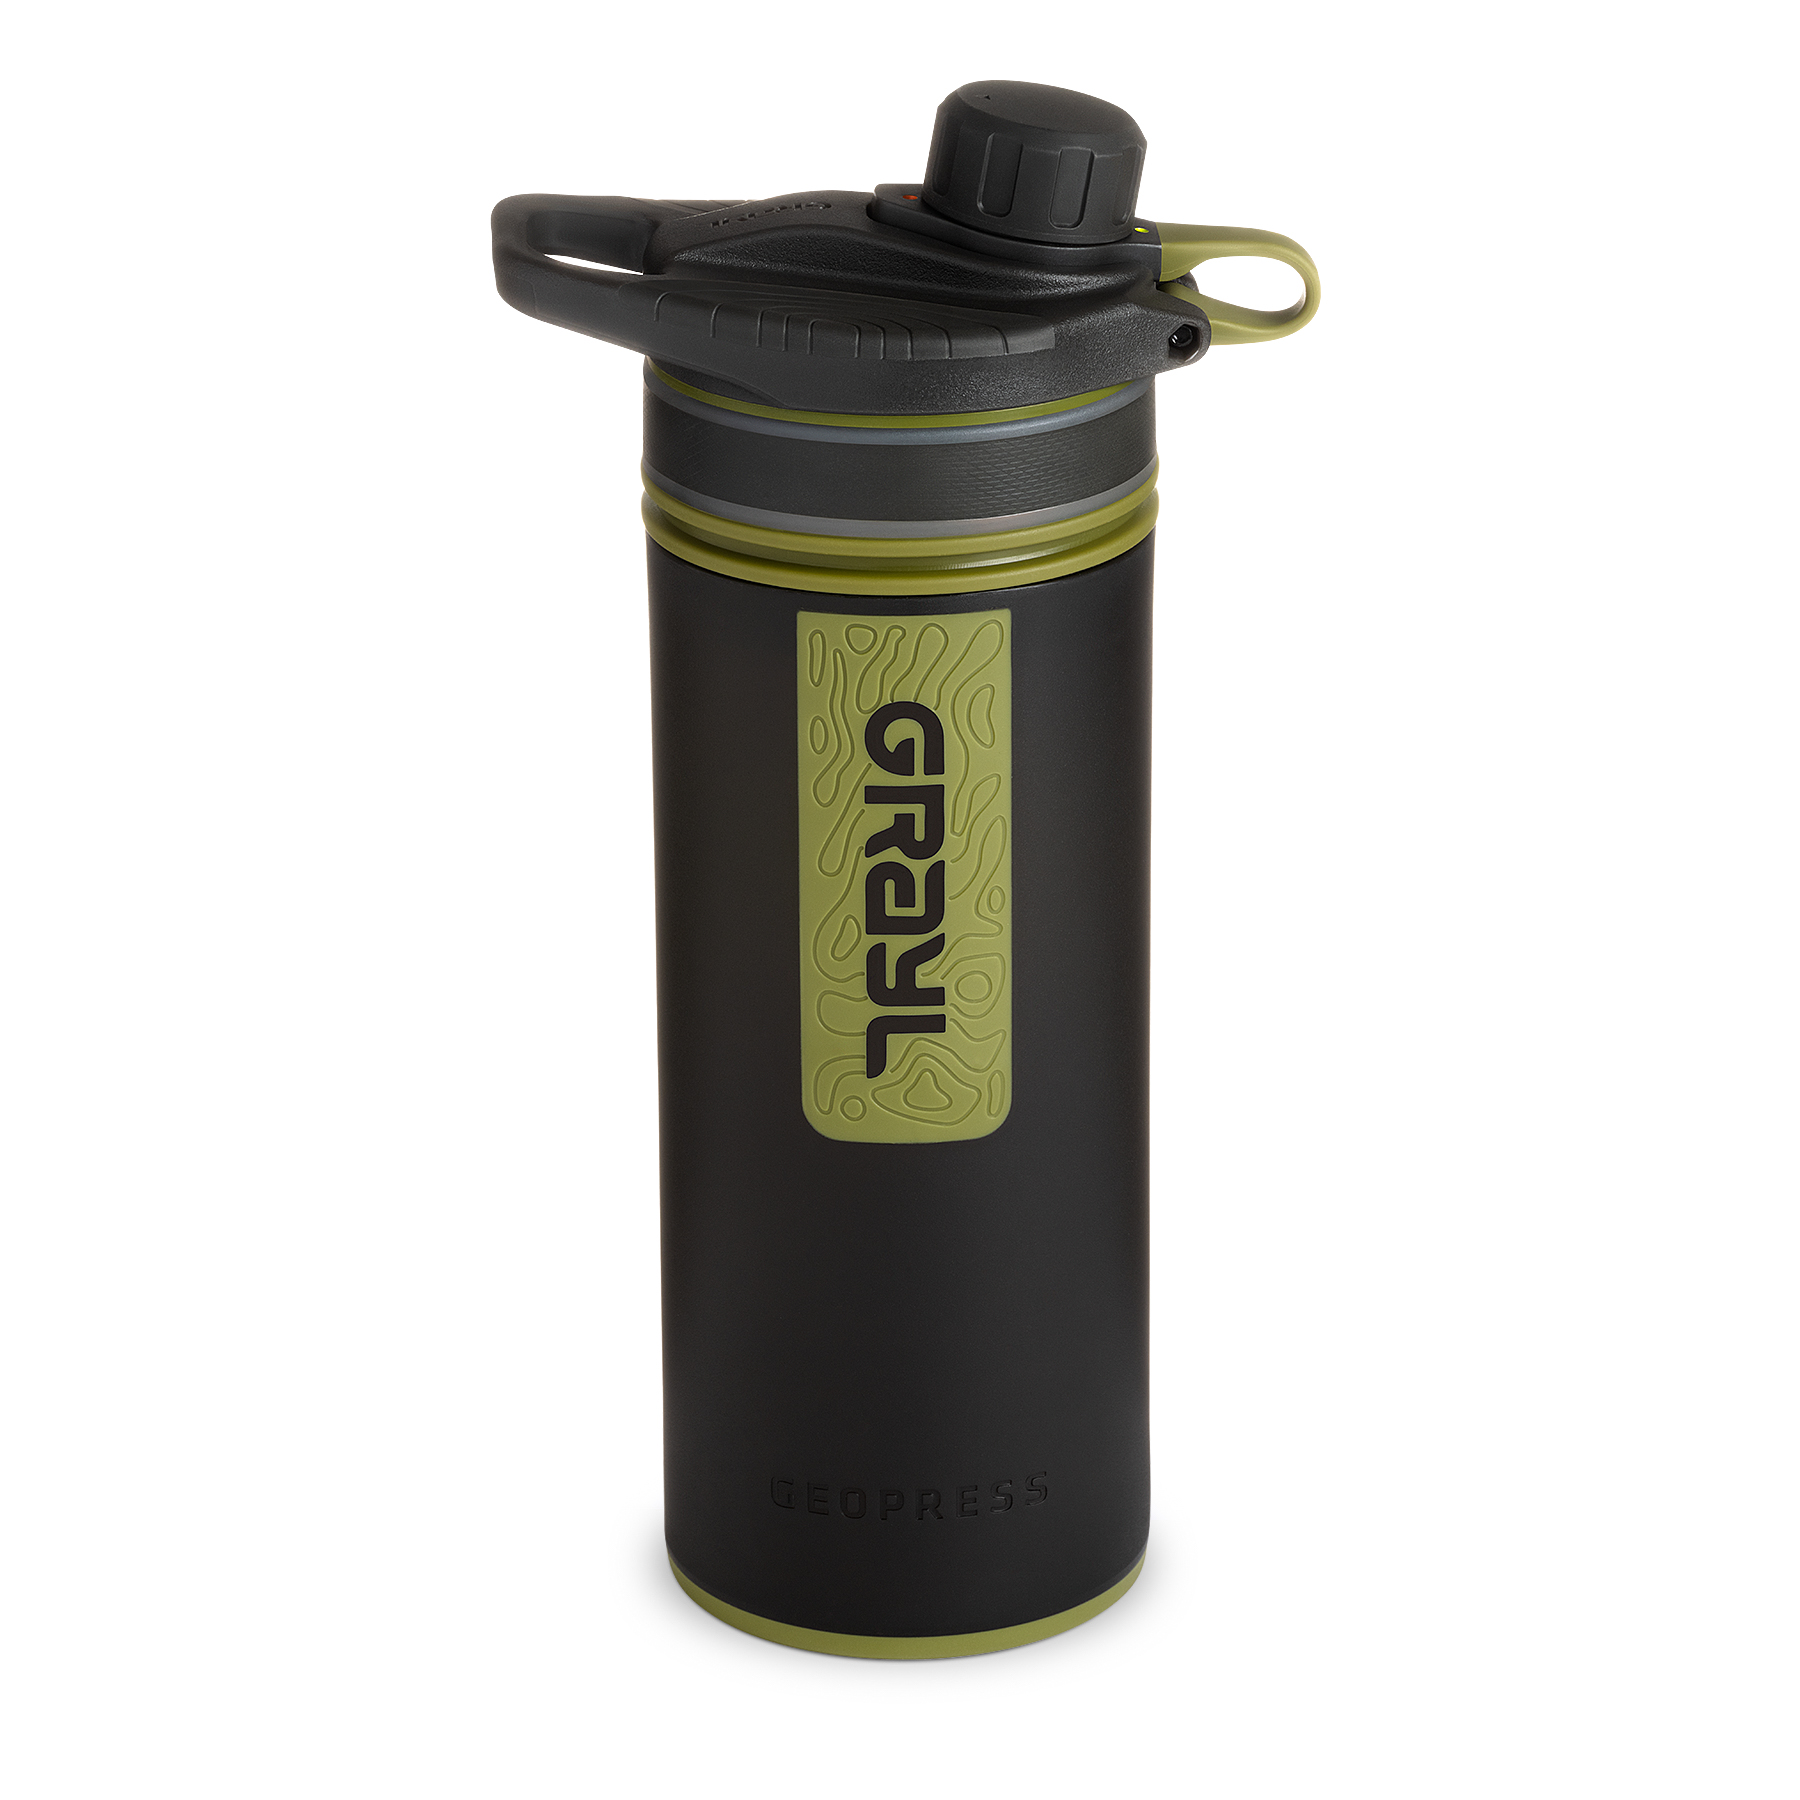 Produktbild von Grayl GeoPress Trinkflasche mit Wasserfilter - 710ml - Black Camo